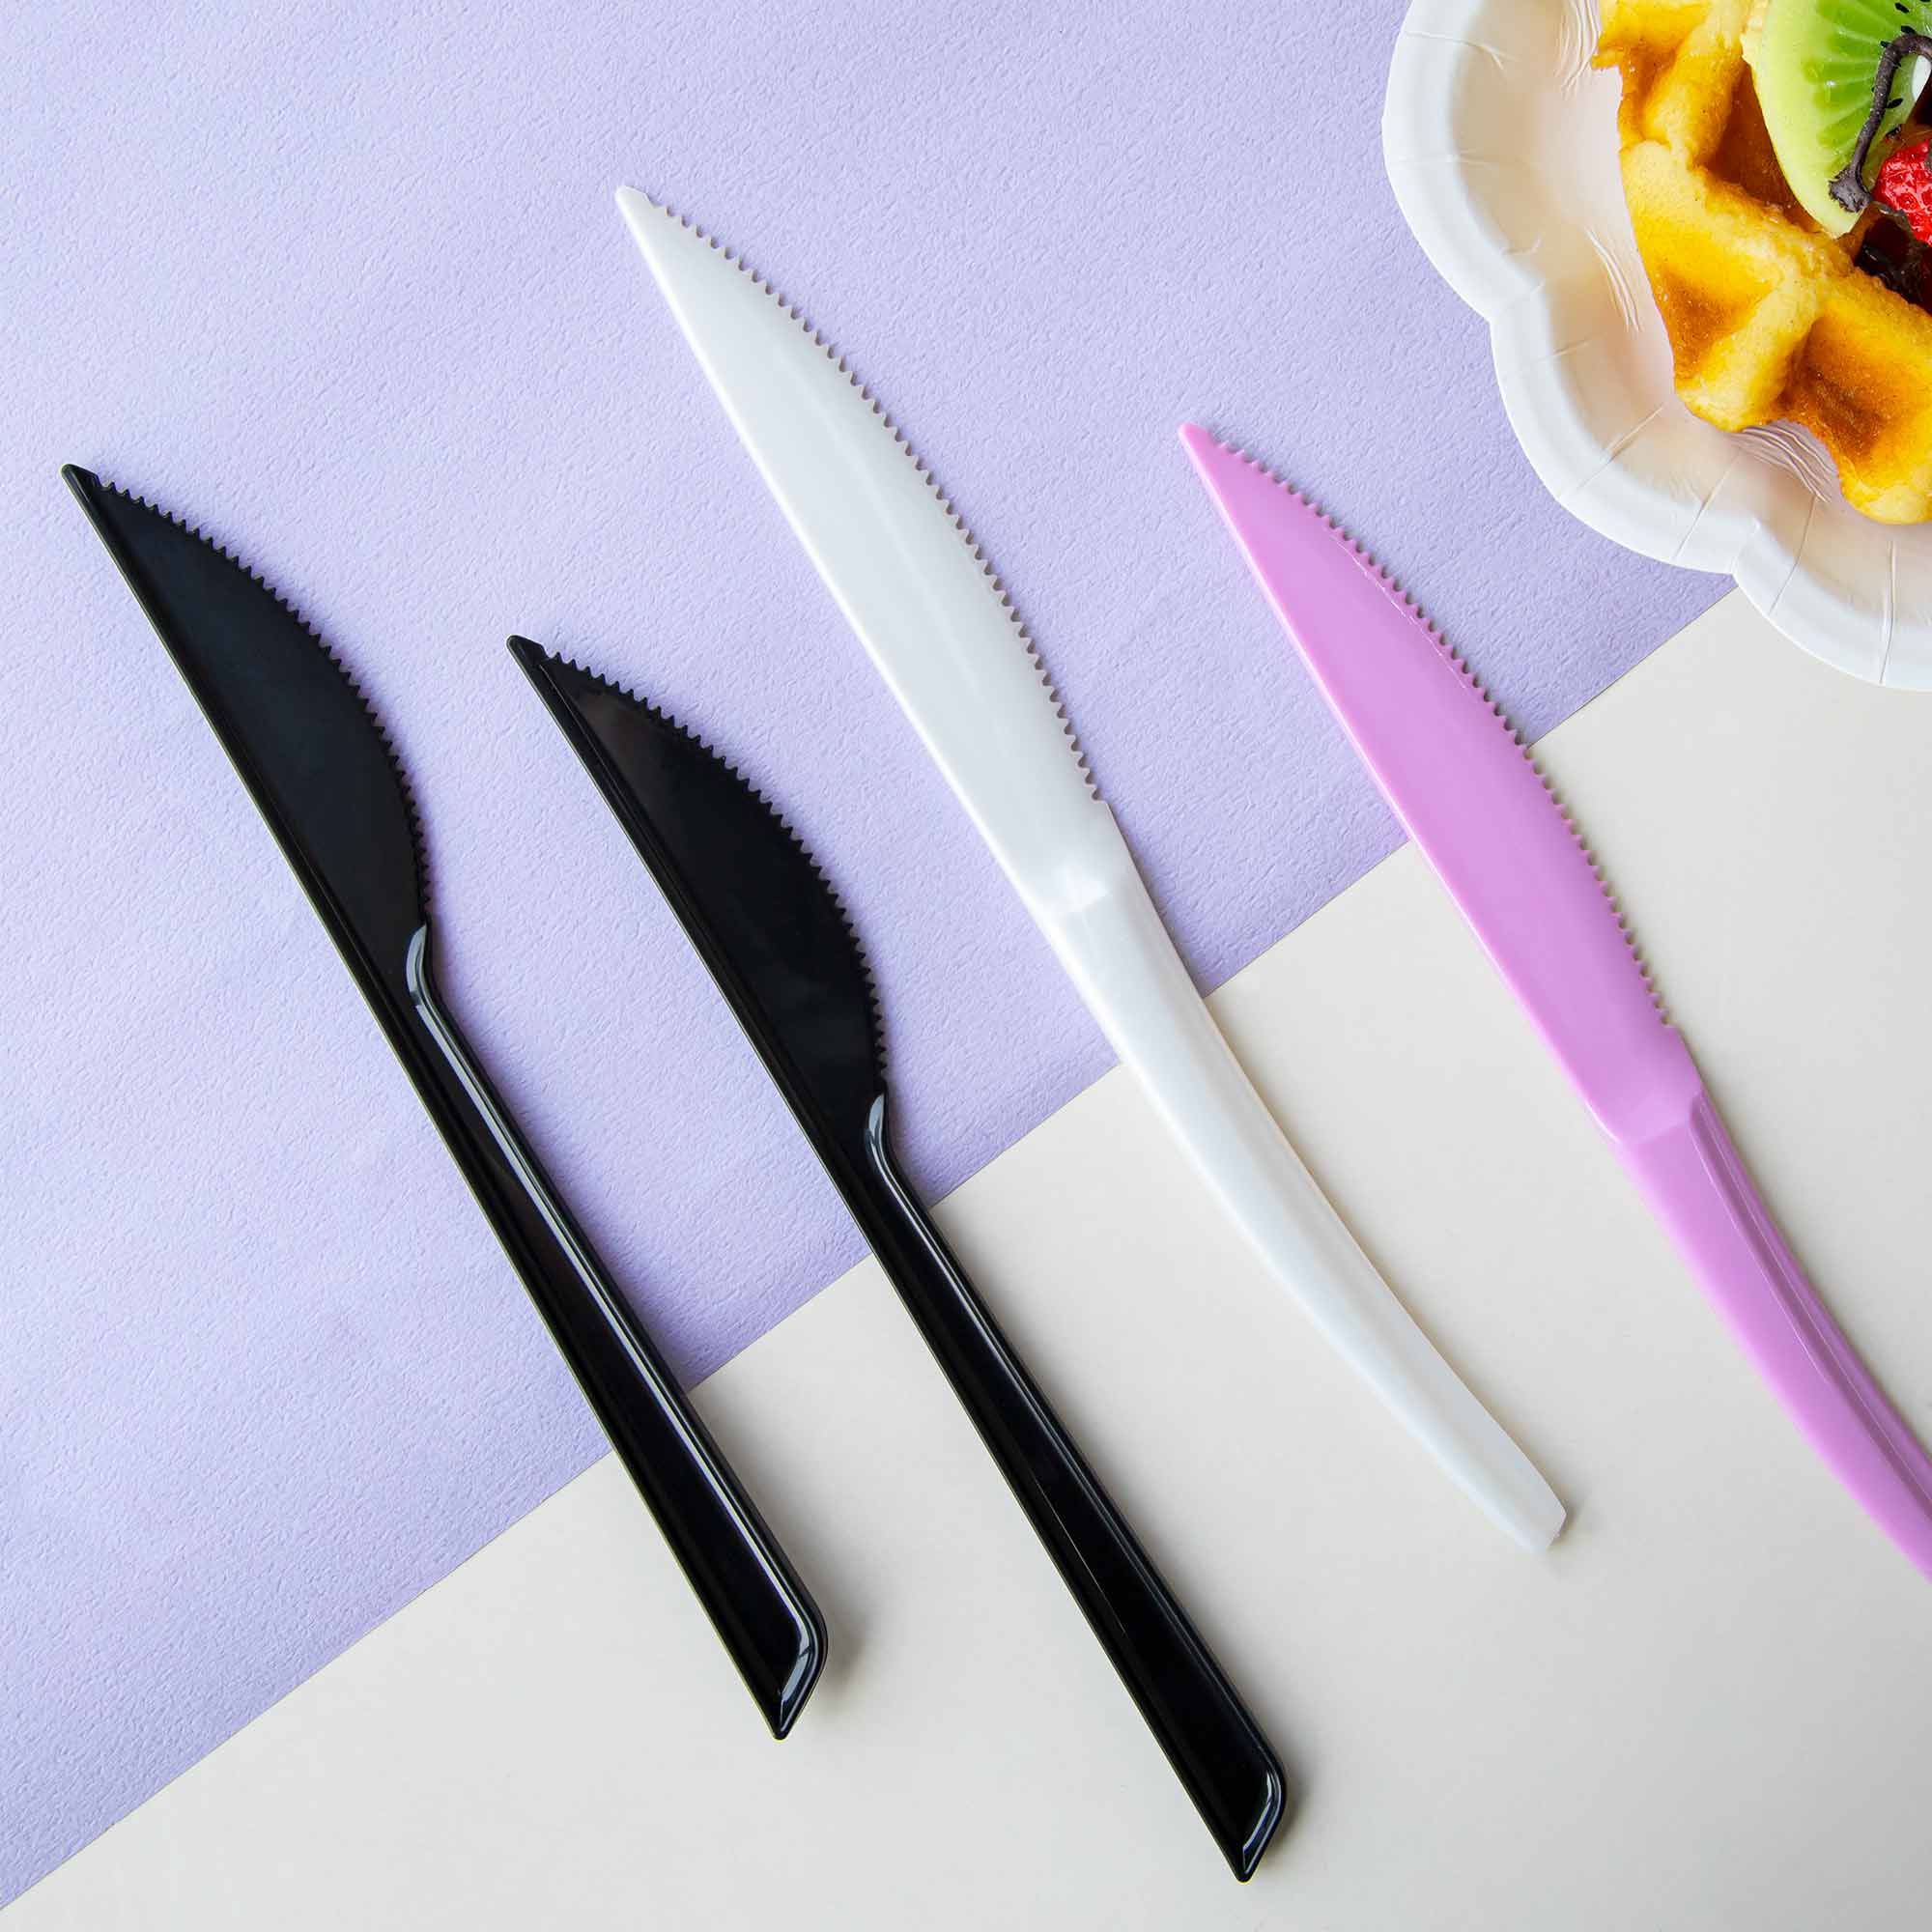 High Quality Plastic Knife